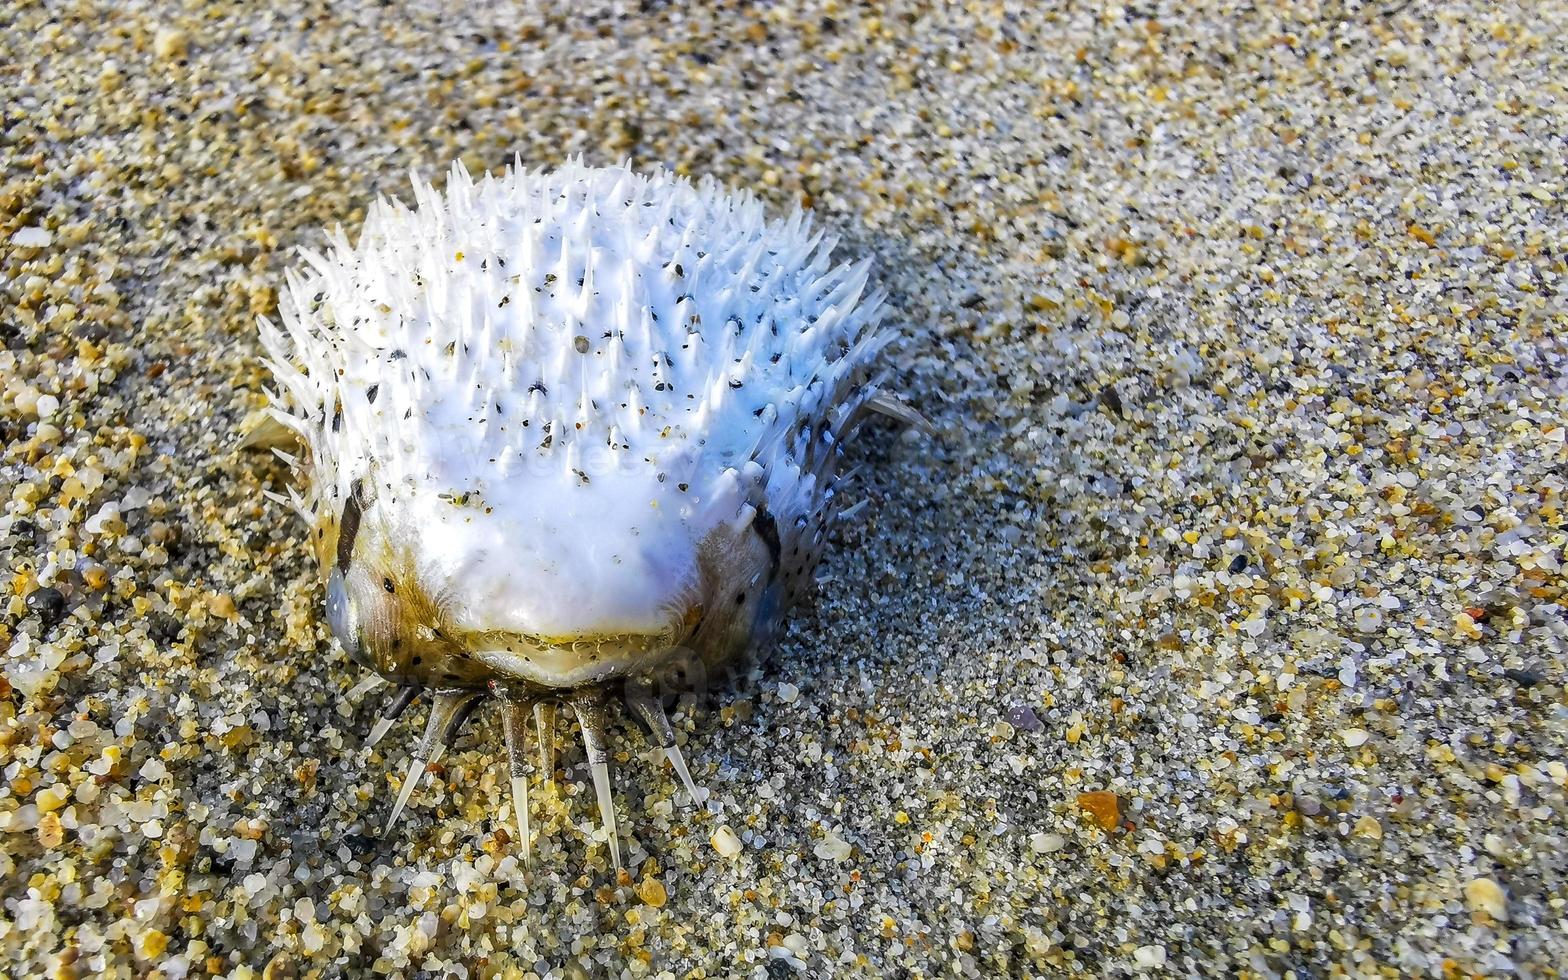 baiacu morto lavado na praia encontra-se na areia. foto